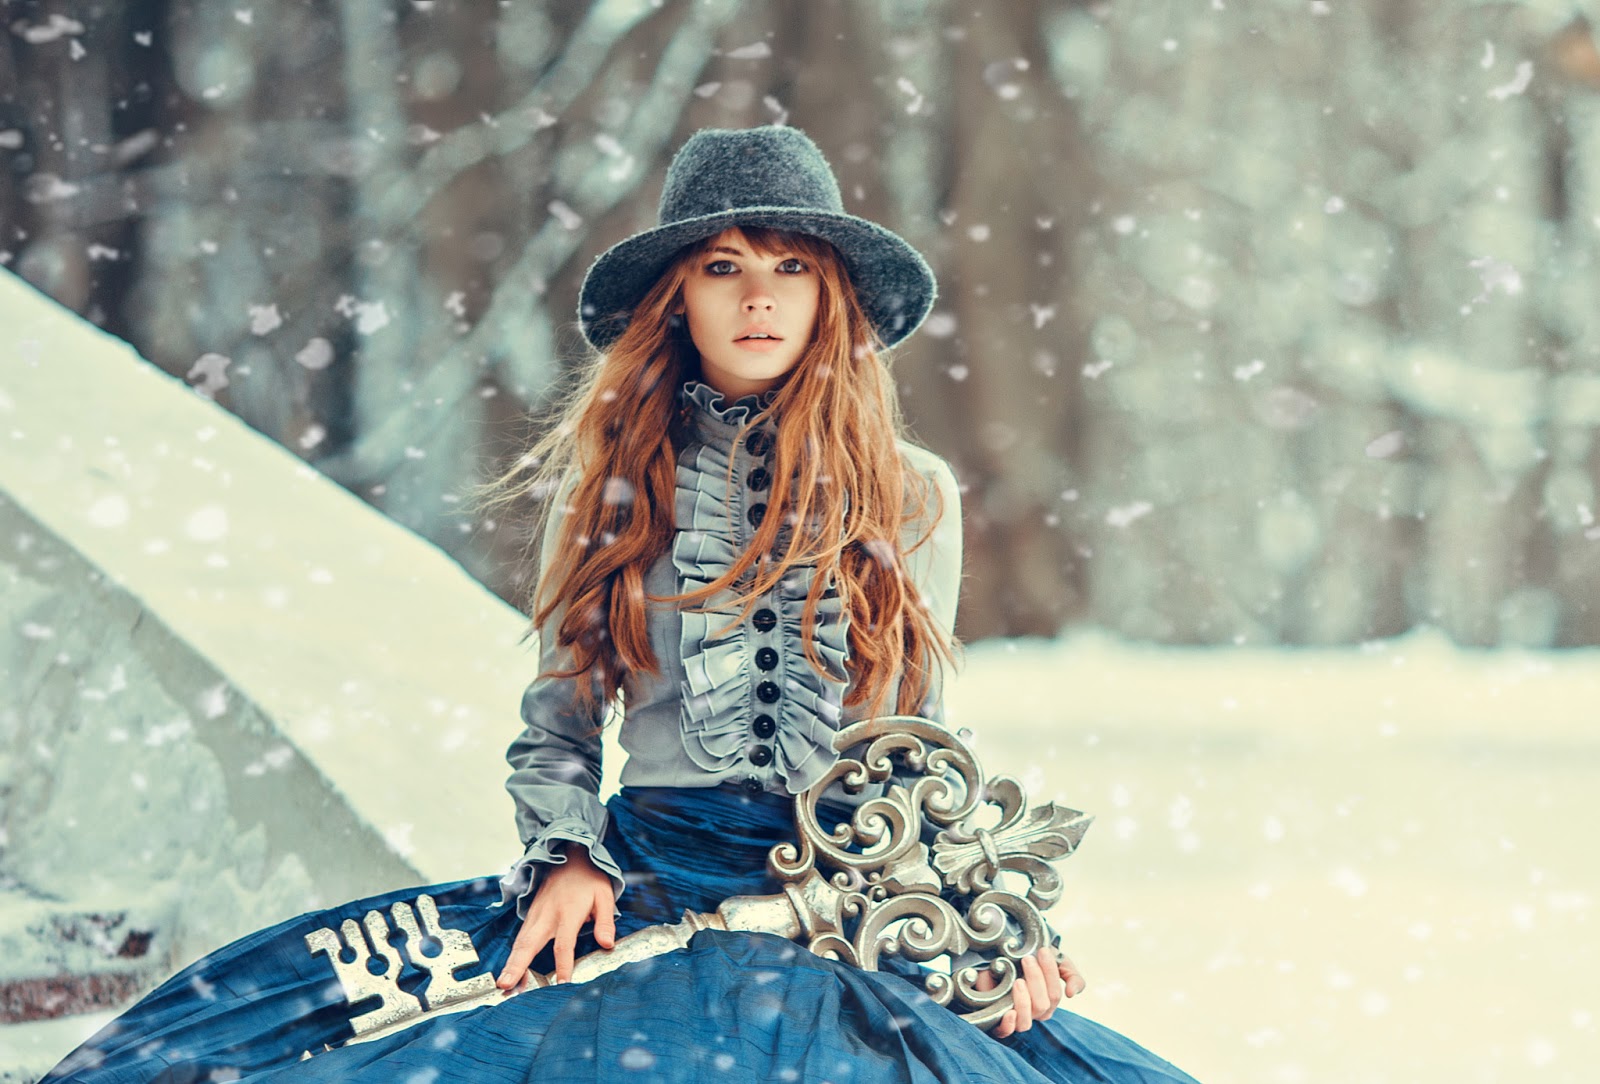 Модные женские шляпы: Осень-Зима 2017-2018 года